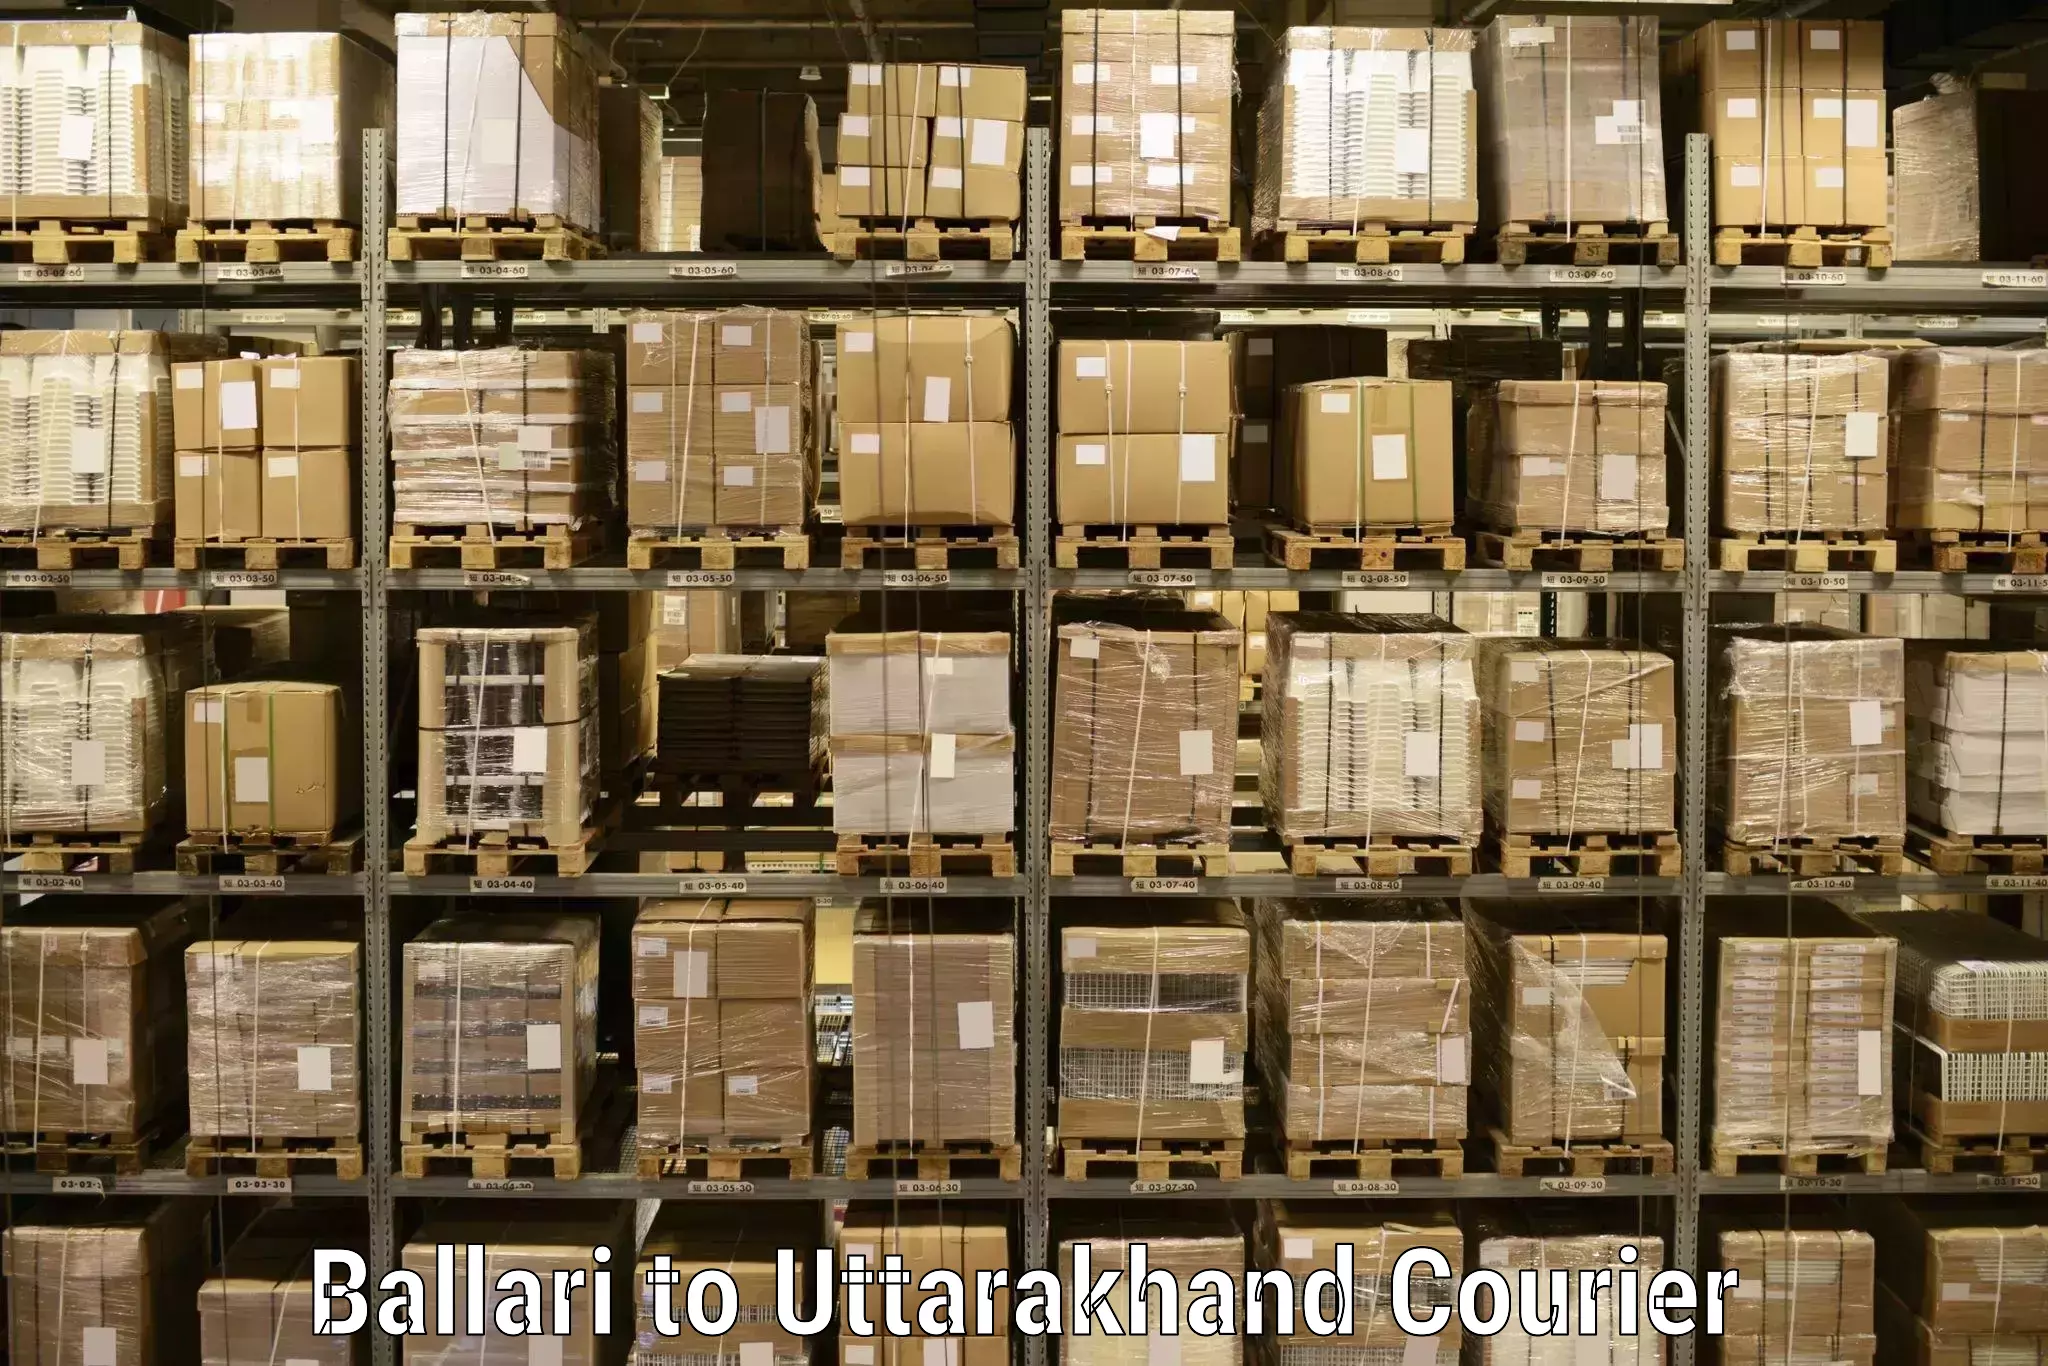 Customer-centric shipping in Ballari to Nainital